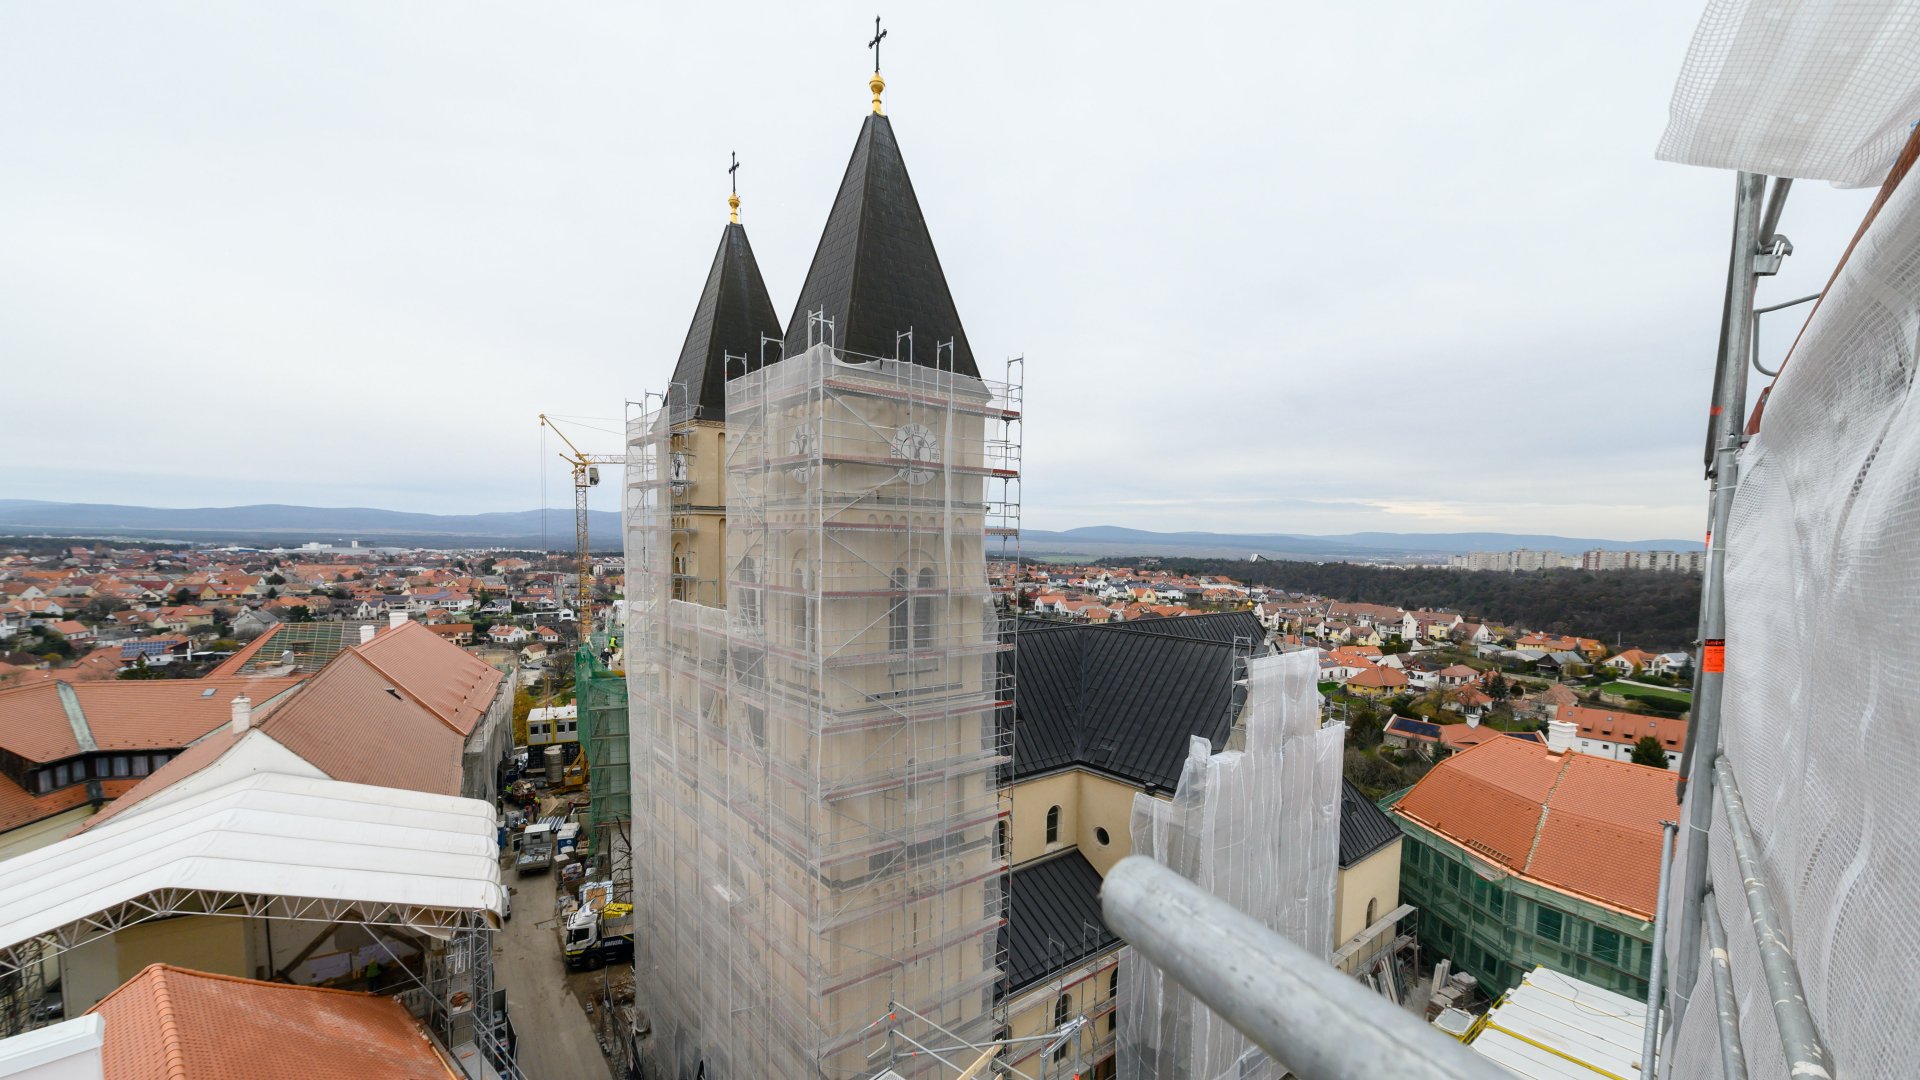 A Veszprém-Balaton 2023 Európa Kulturális Fõvárosa program keretében megújuló Szent Mihály Fõszékesegyház a Szent István Templom tornyának állványzatáról fotózva a veszprémi várnegyedben 2022. november 30-án